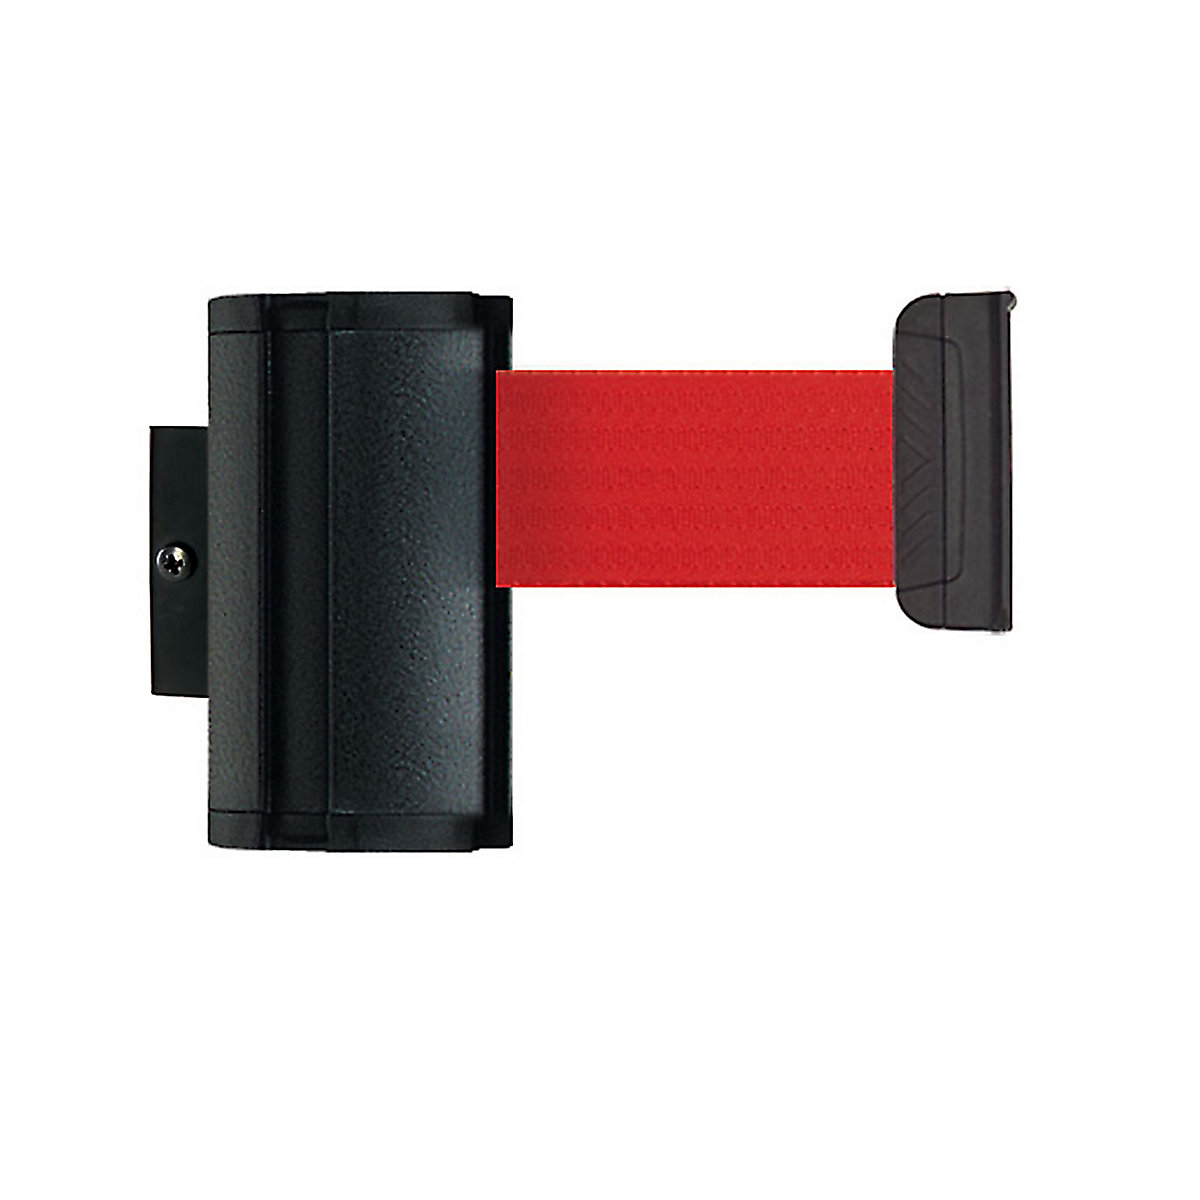 Cassete de cinta Wall Mount, extração máx. da cinta 3700 mm, cor da cinta vermelho-3